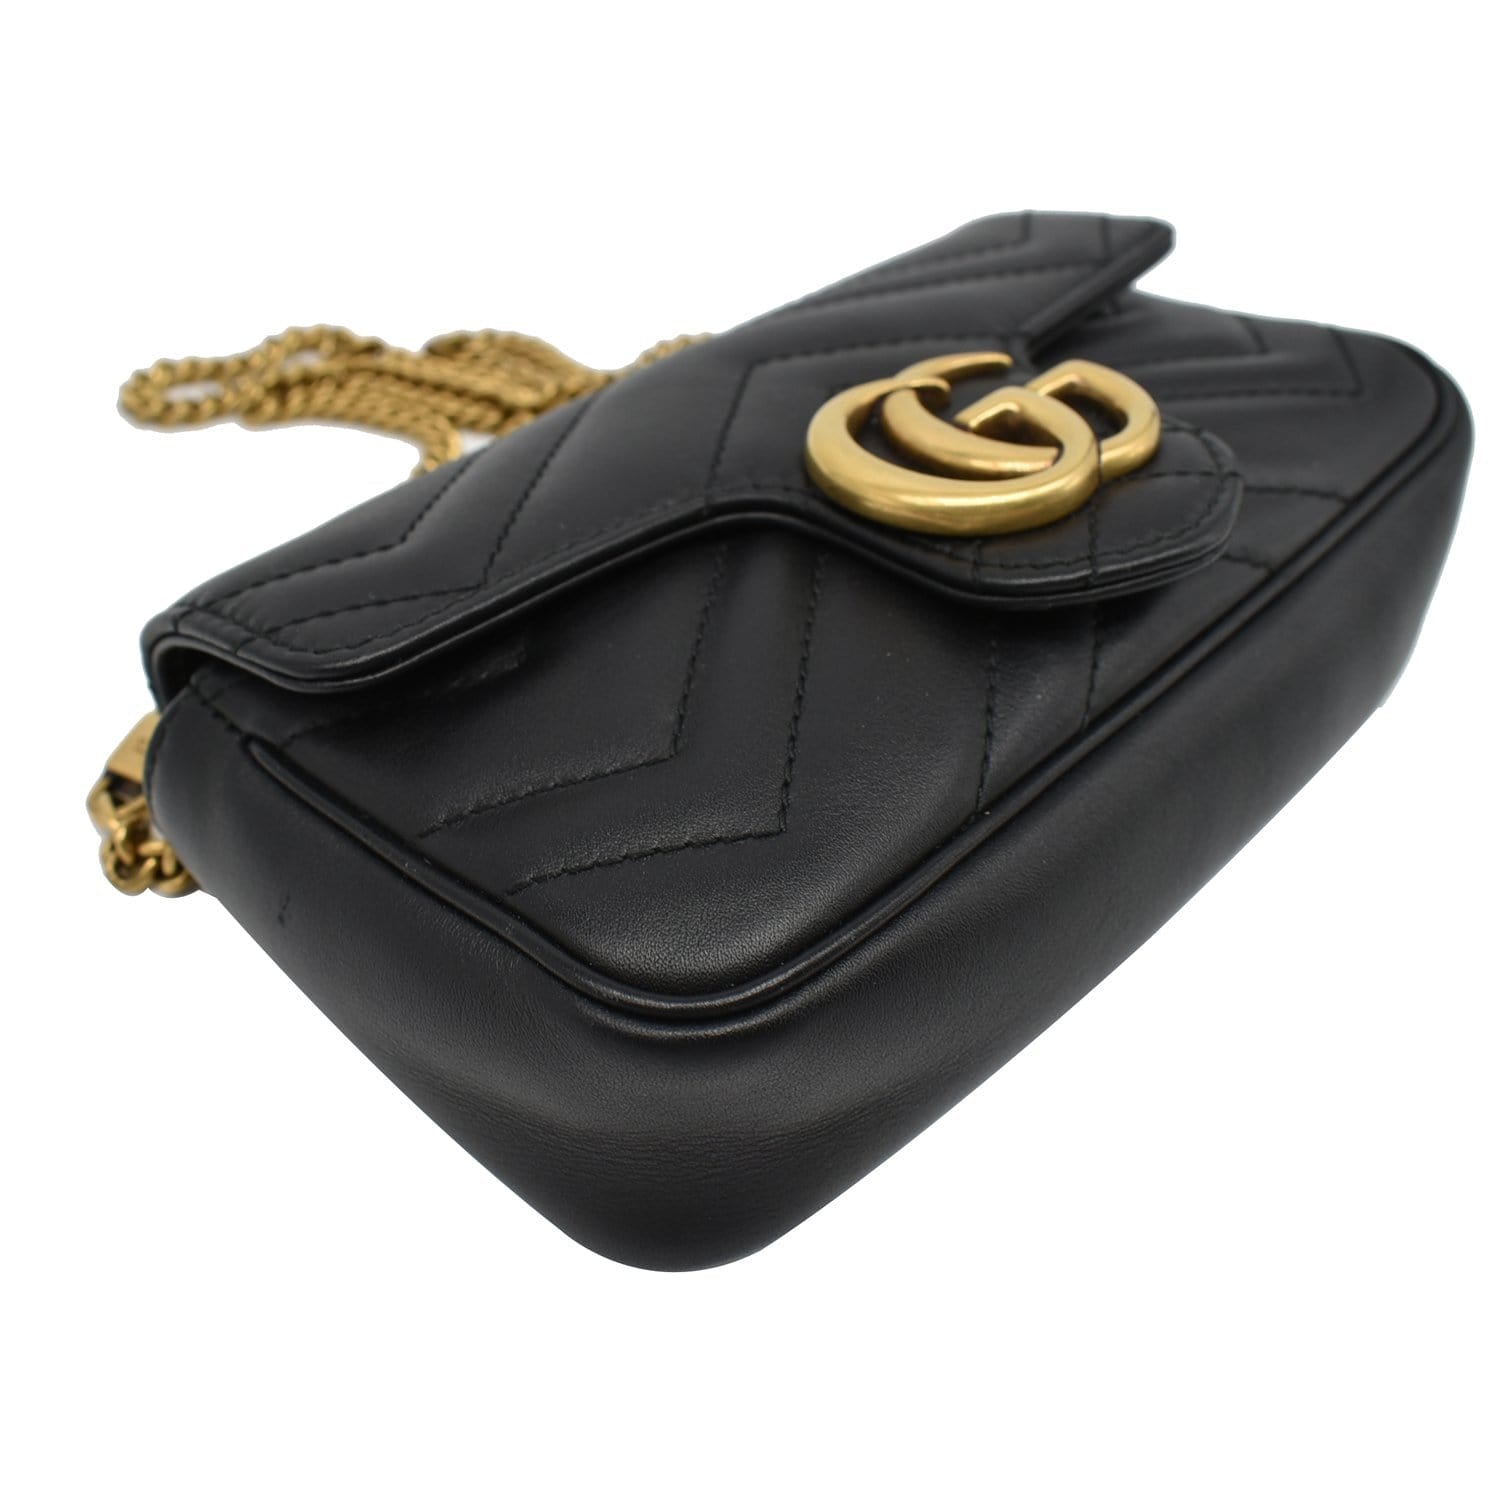 Black GG Marmont super mini leather cross-body bag, Gucci